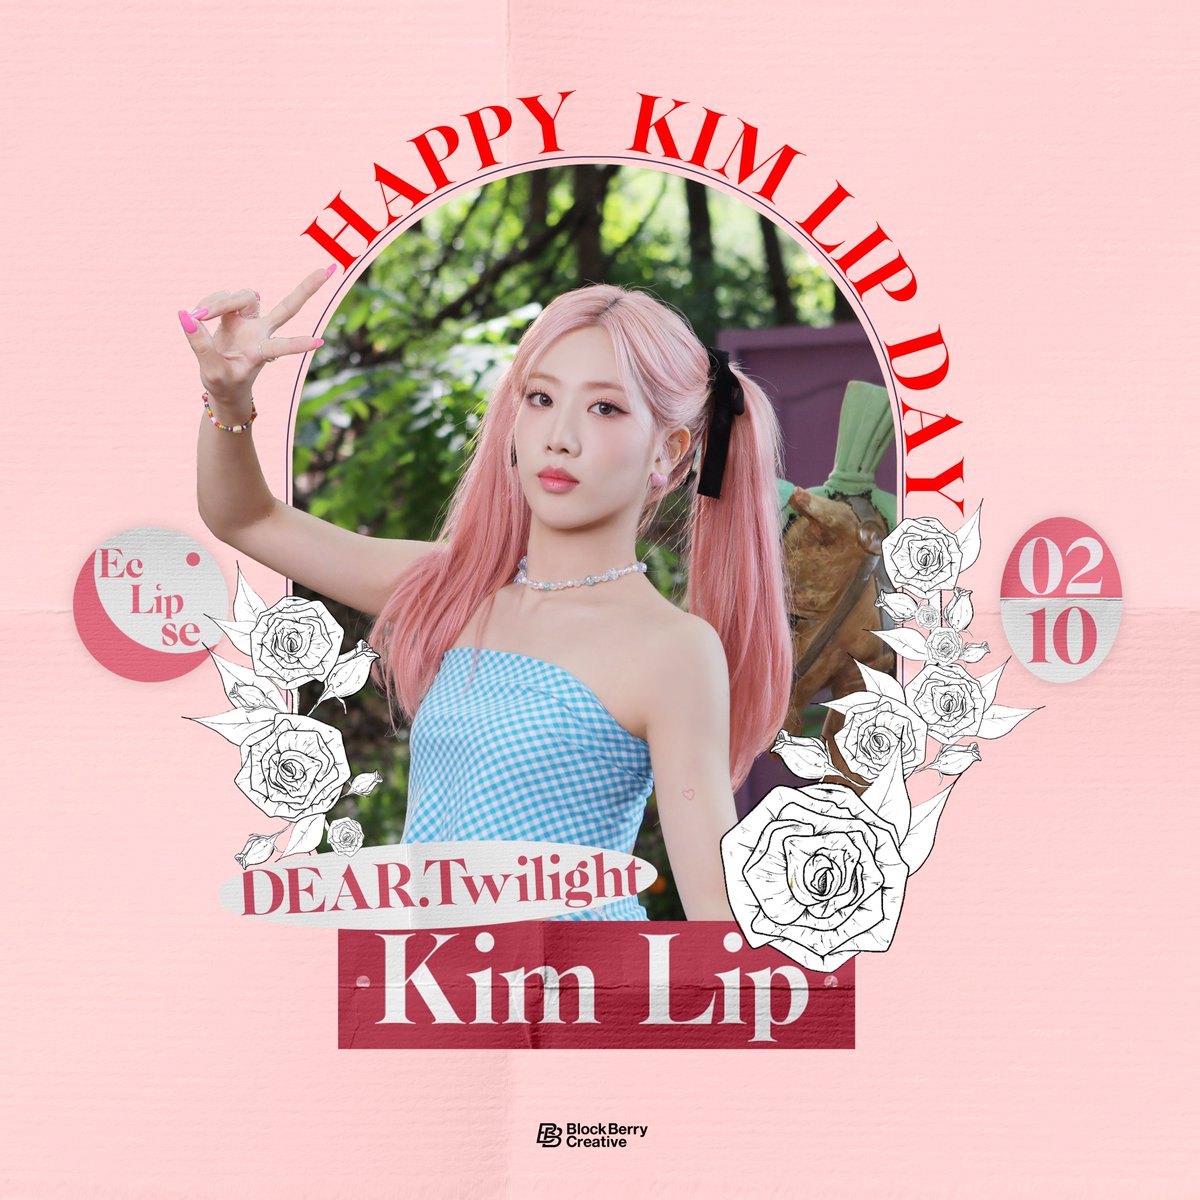 Happy Birthday to #KimLip 🎂 #이달의소녀 #김립 의 생일을 축하합니다💝 #0210_HBD_KimLip #Happy_KimLip_Day #LOONA